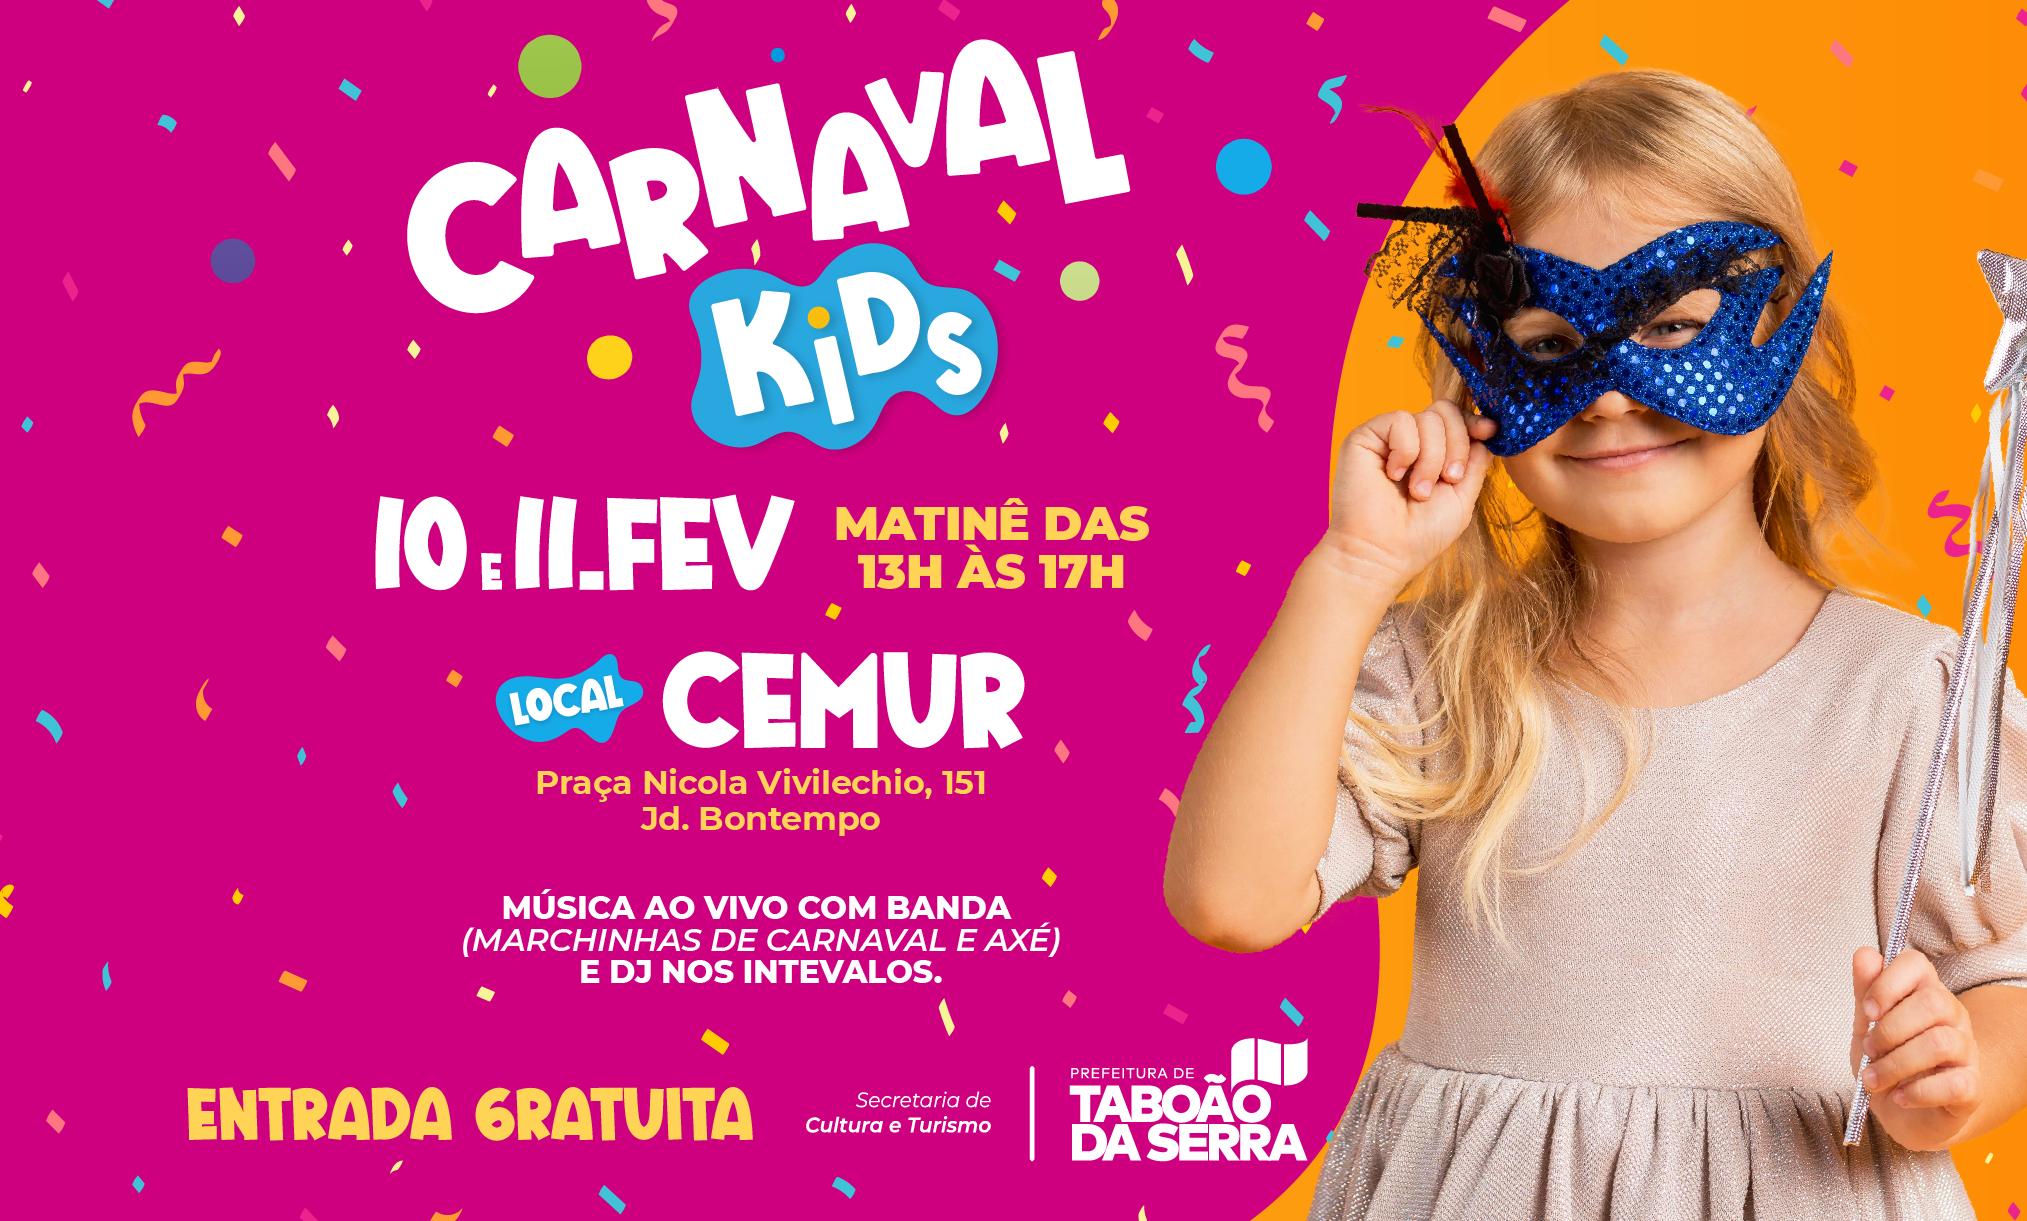 Secretaria de Cultura e Turismo de Taboão da Serra promove Carnaval Kids no Cemur